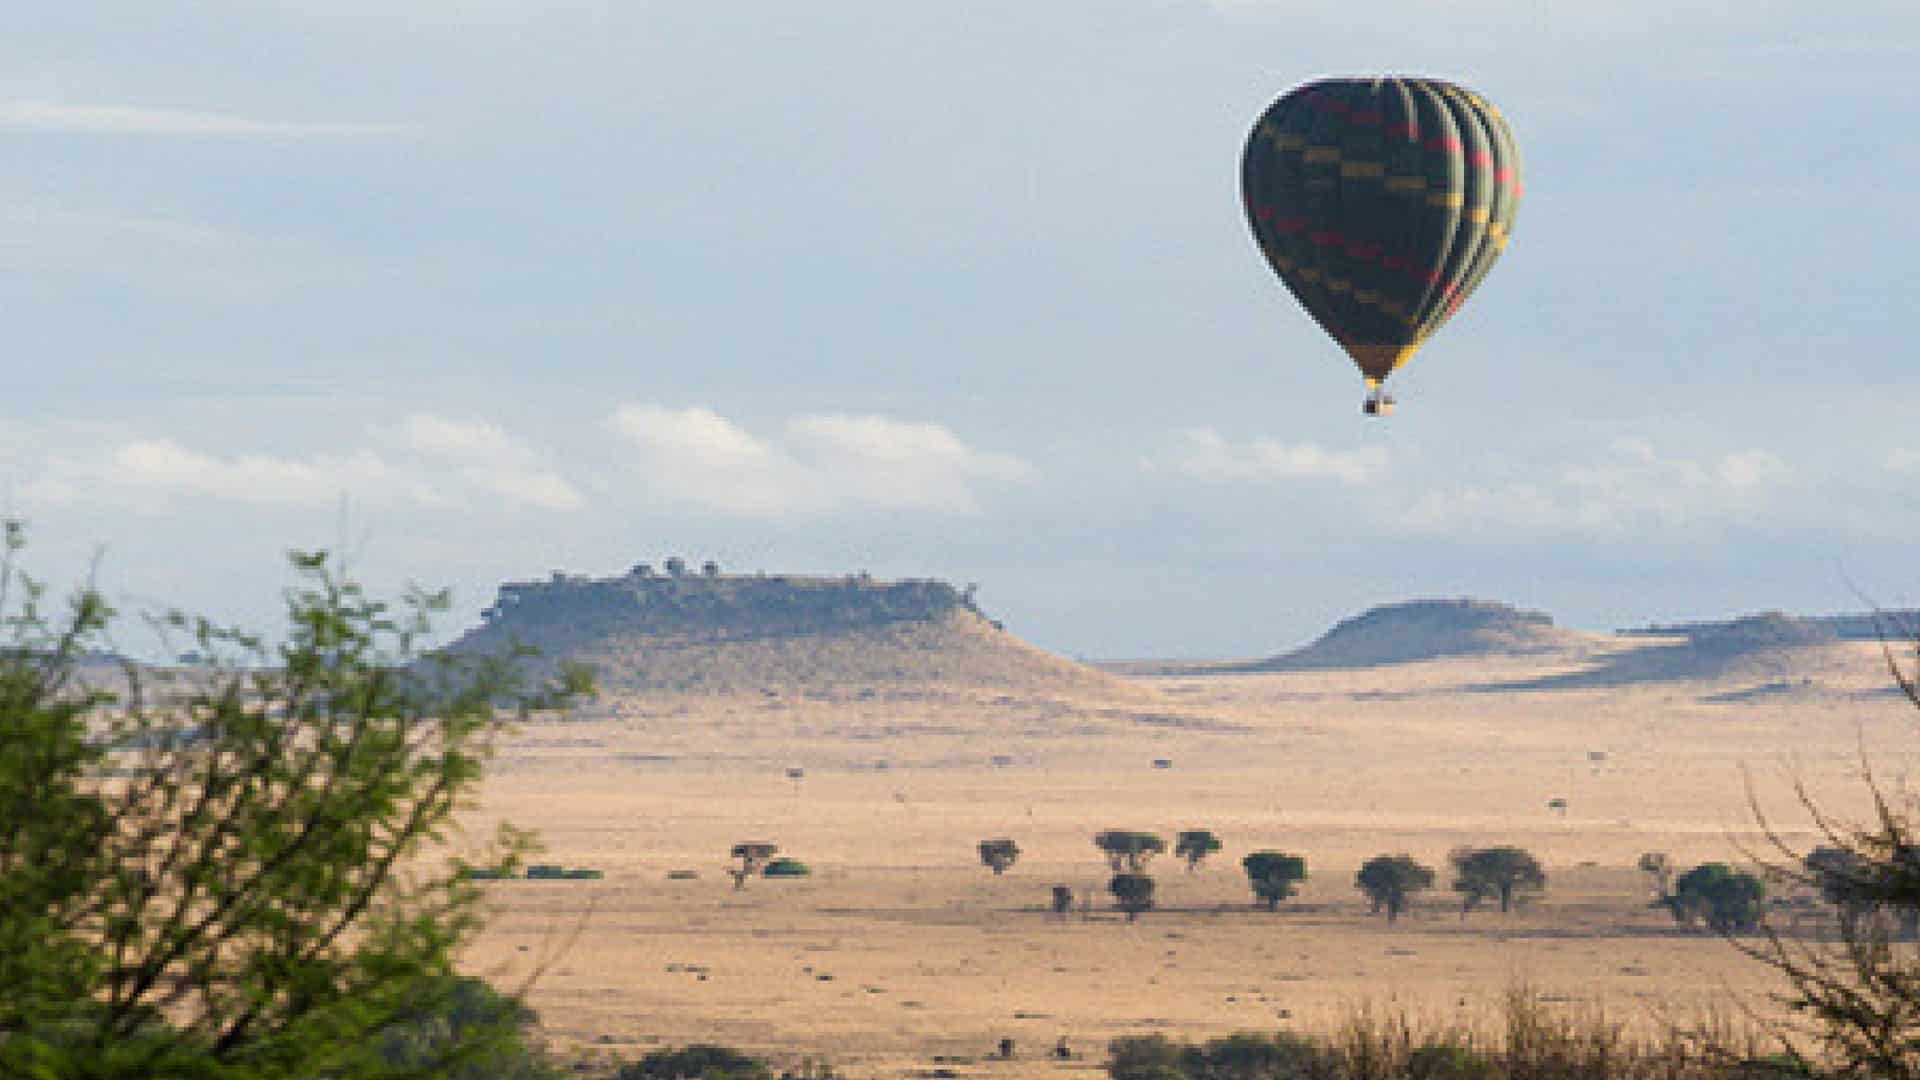 Balloon Safari Africa